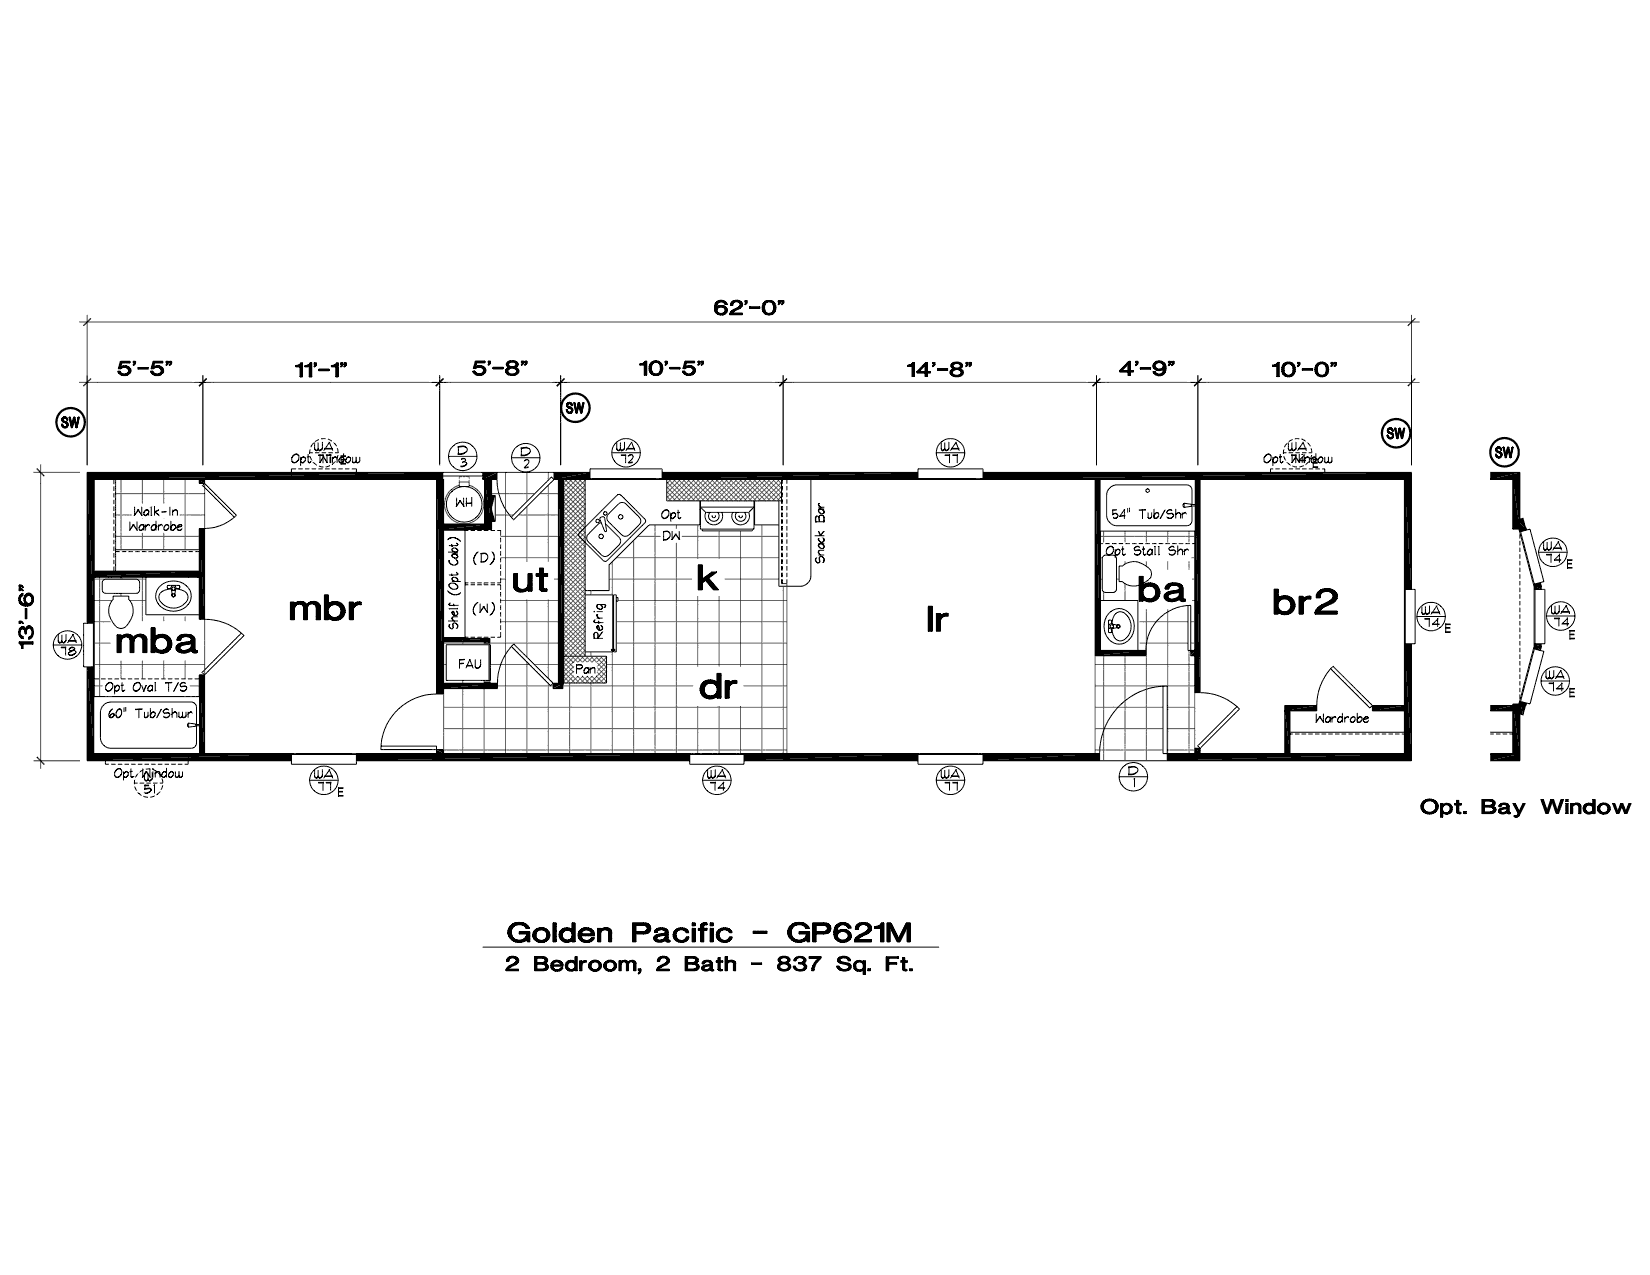 1997 oakwood mobile home floor plan : Modern Modular Home